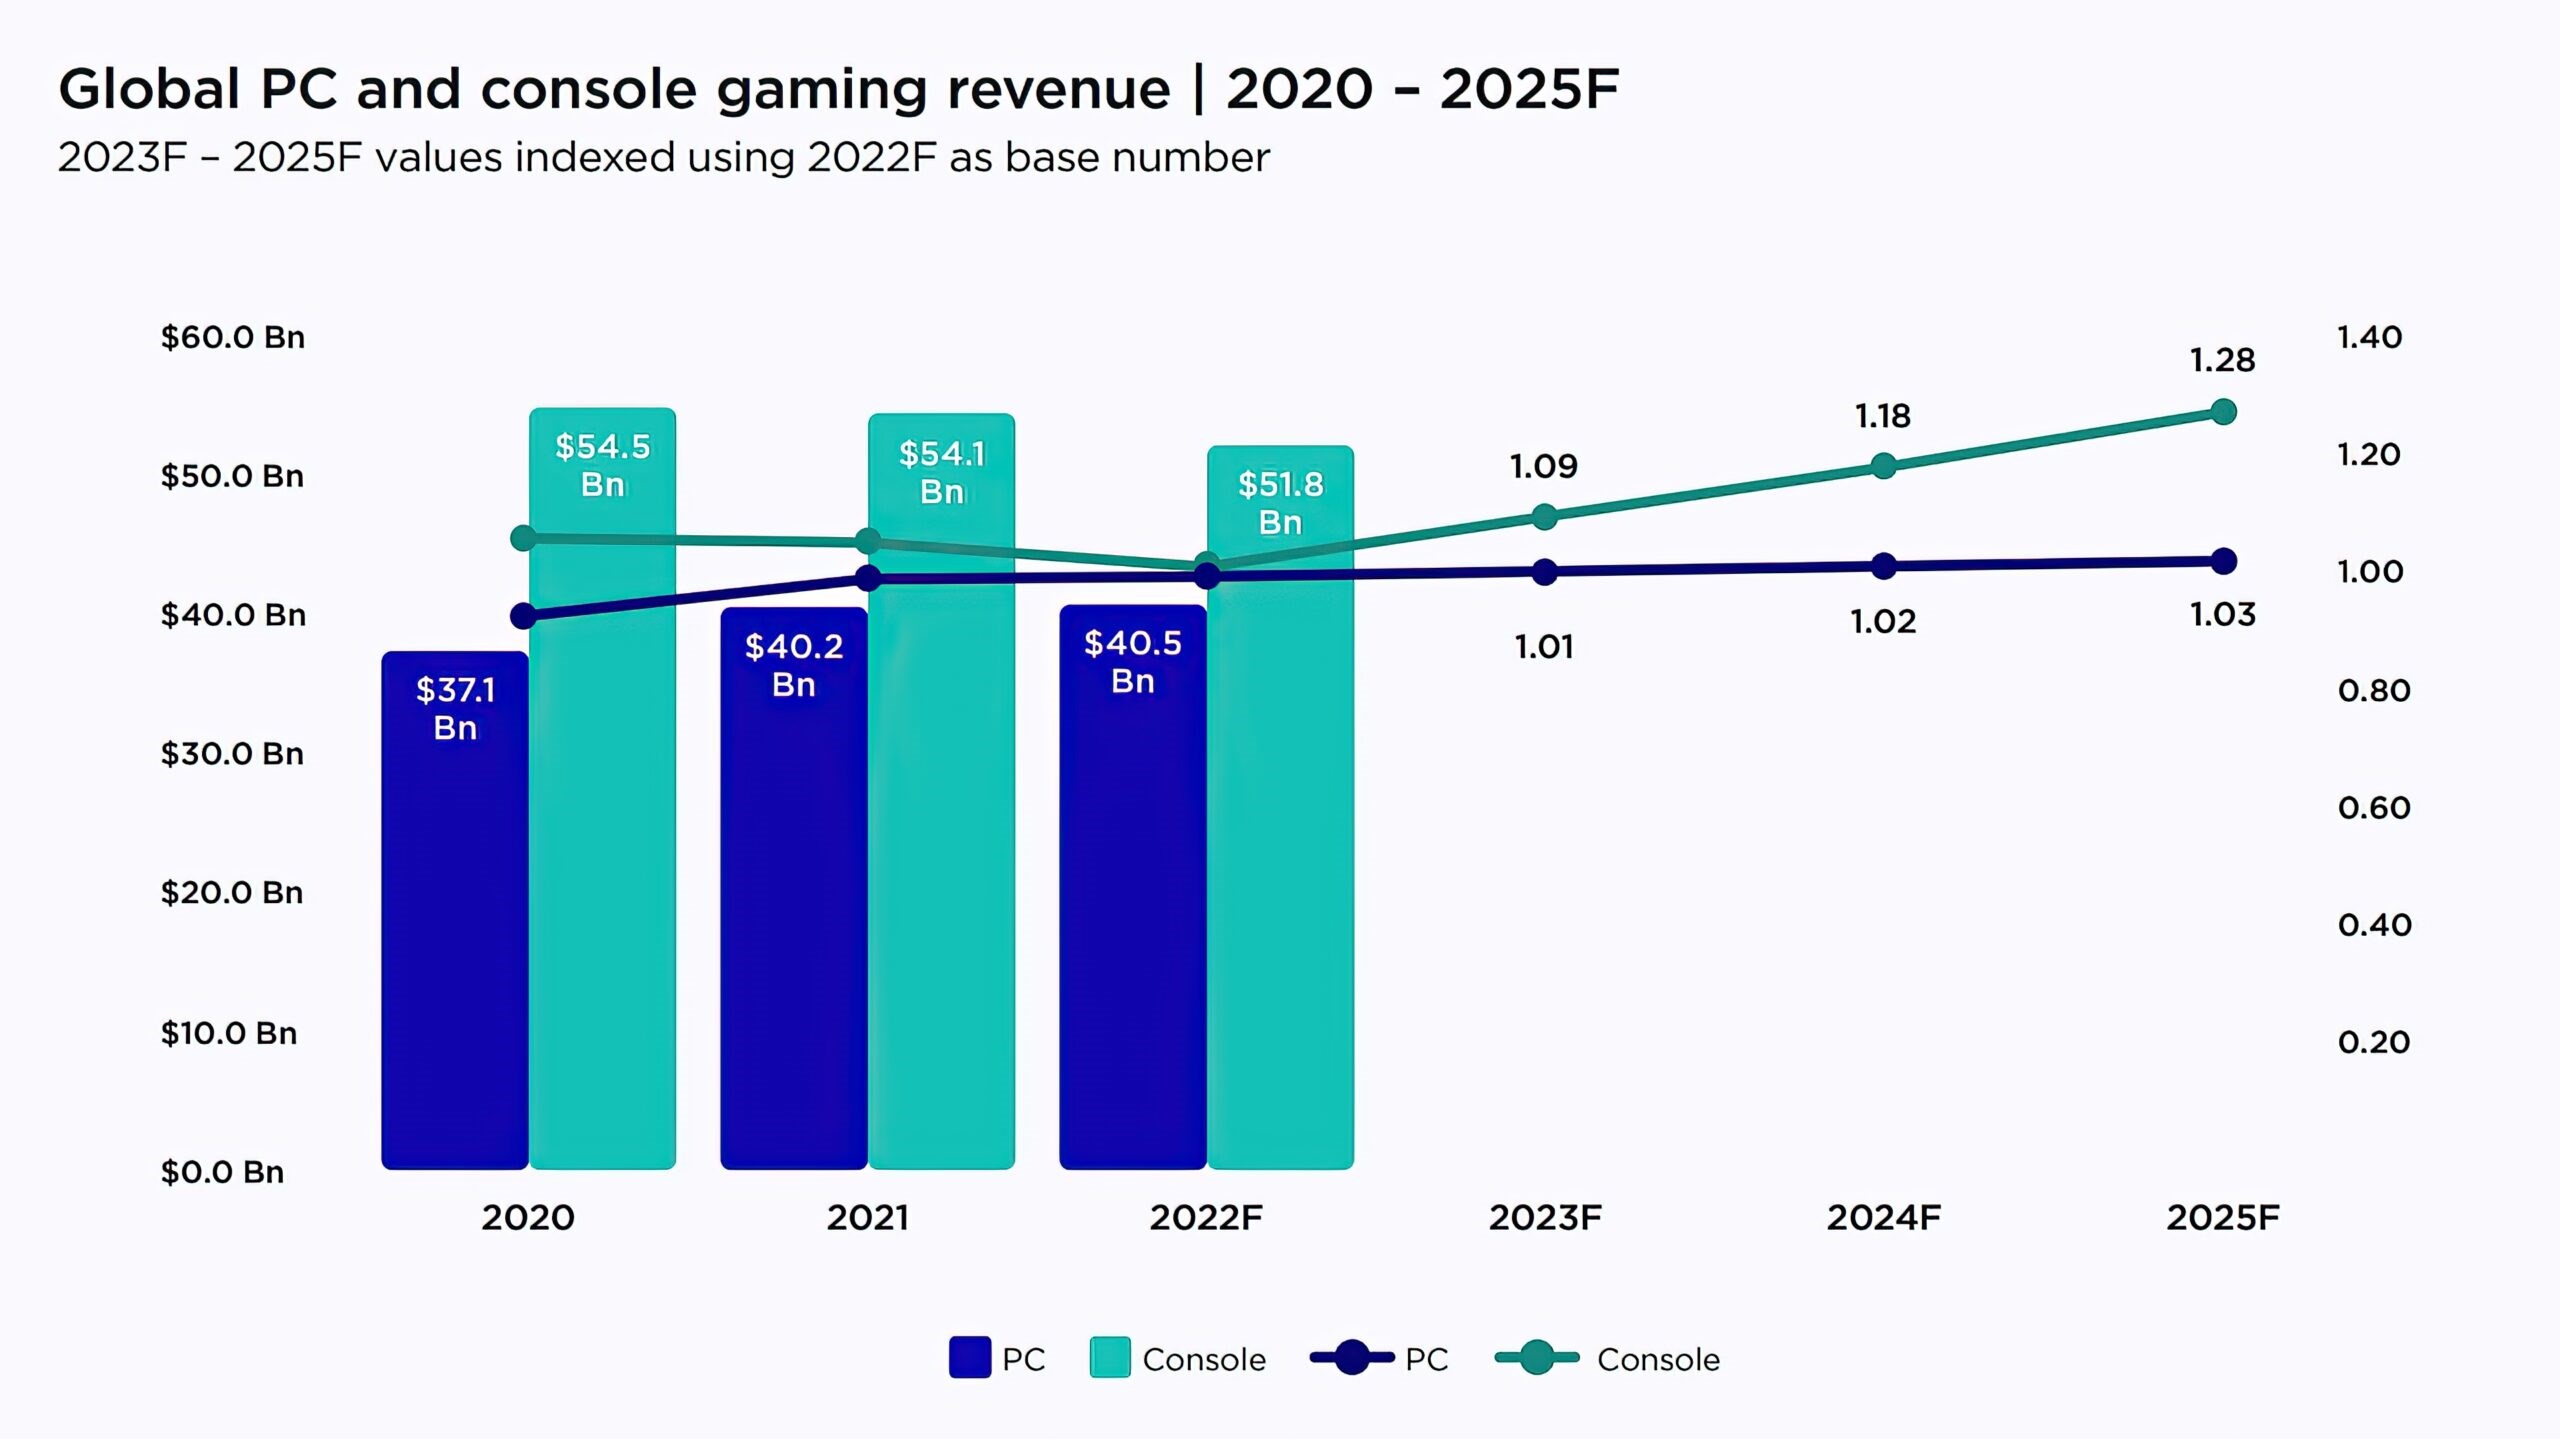 Oyun gelirleri düştü ama 2023 beklenen yıl olabilir